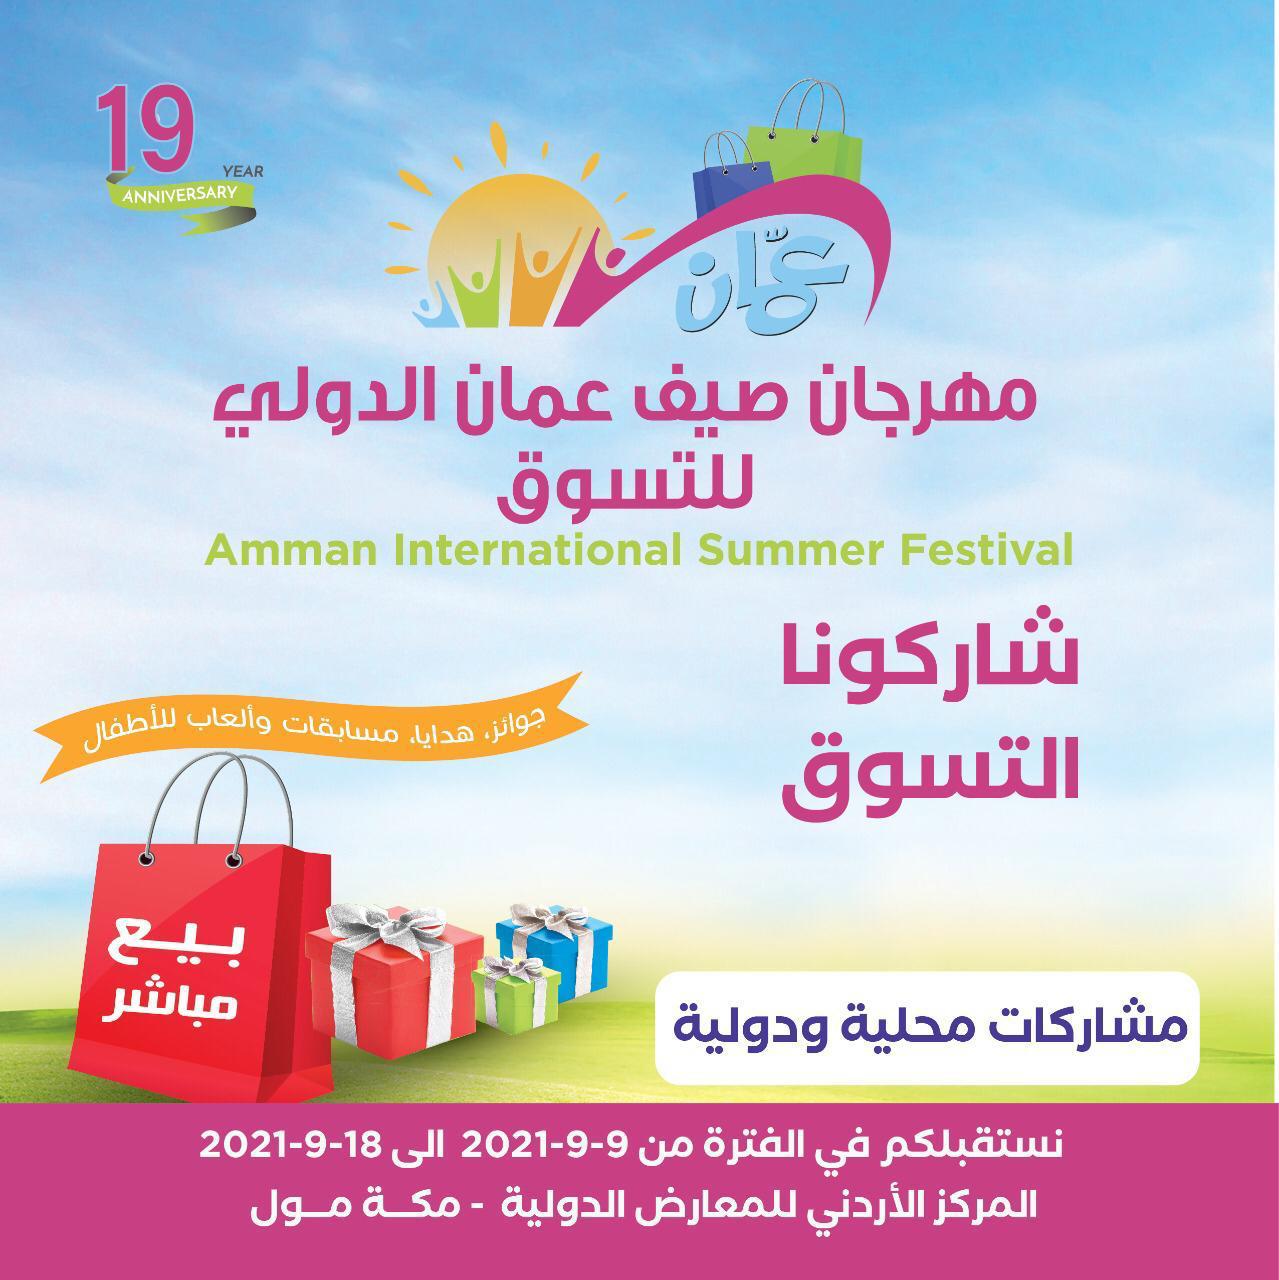 عودة مهرجان صيف عمان الدولي للتسوق أيلول المقبل